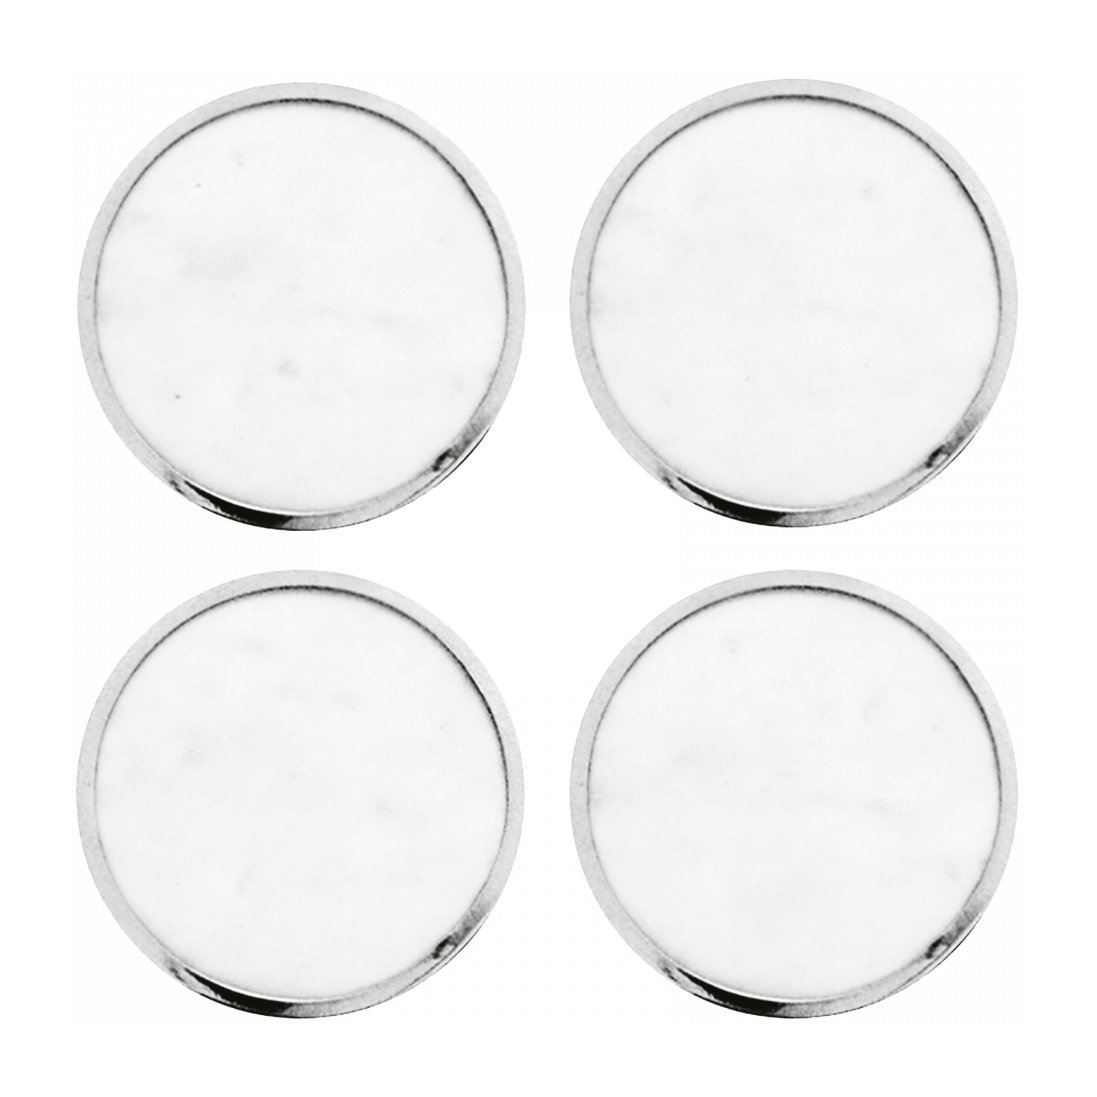 hilke collection dessous de verre hilke collection lot de 4 marbre blanc-laiton nickelé